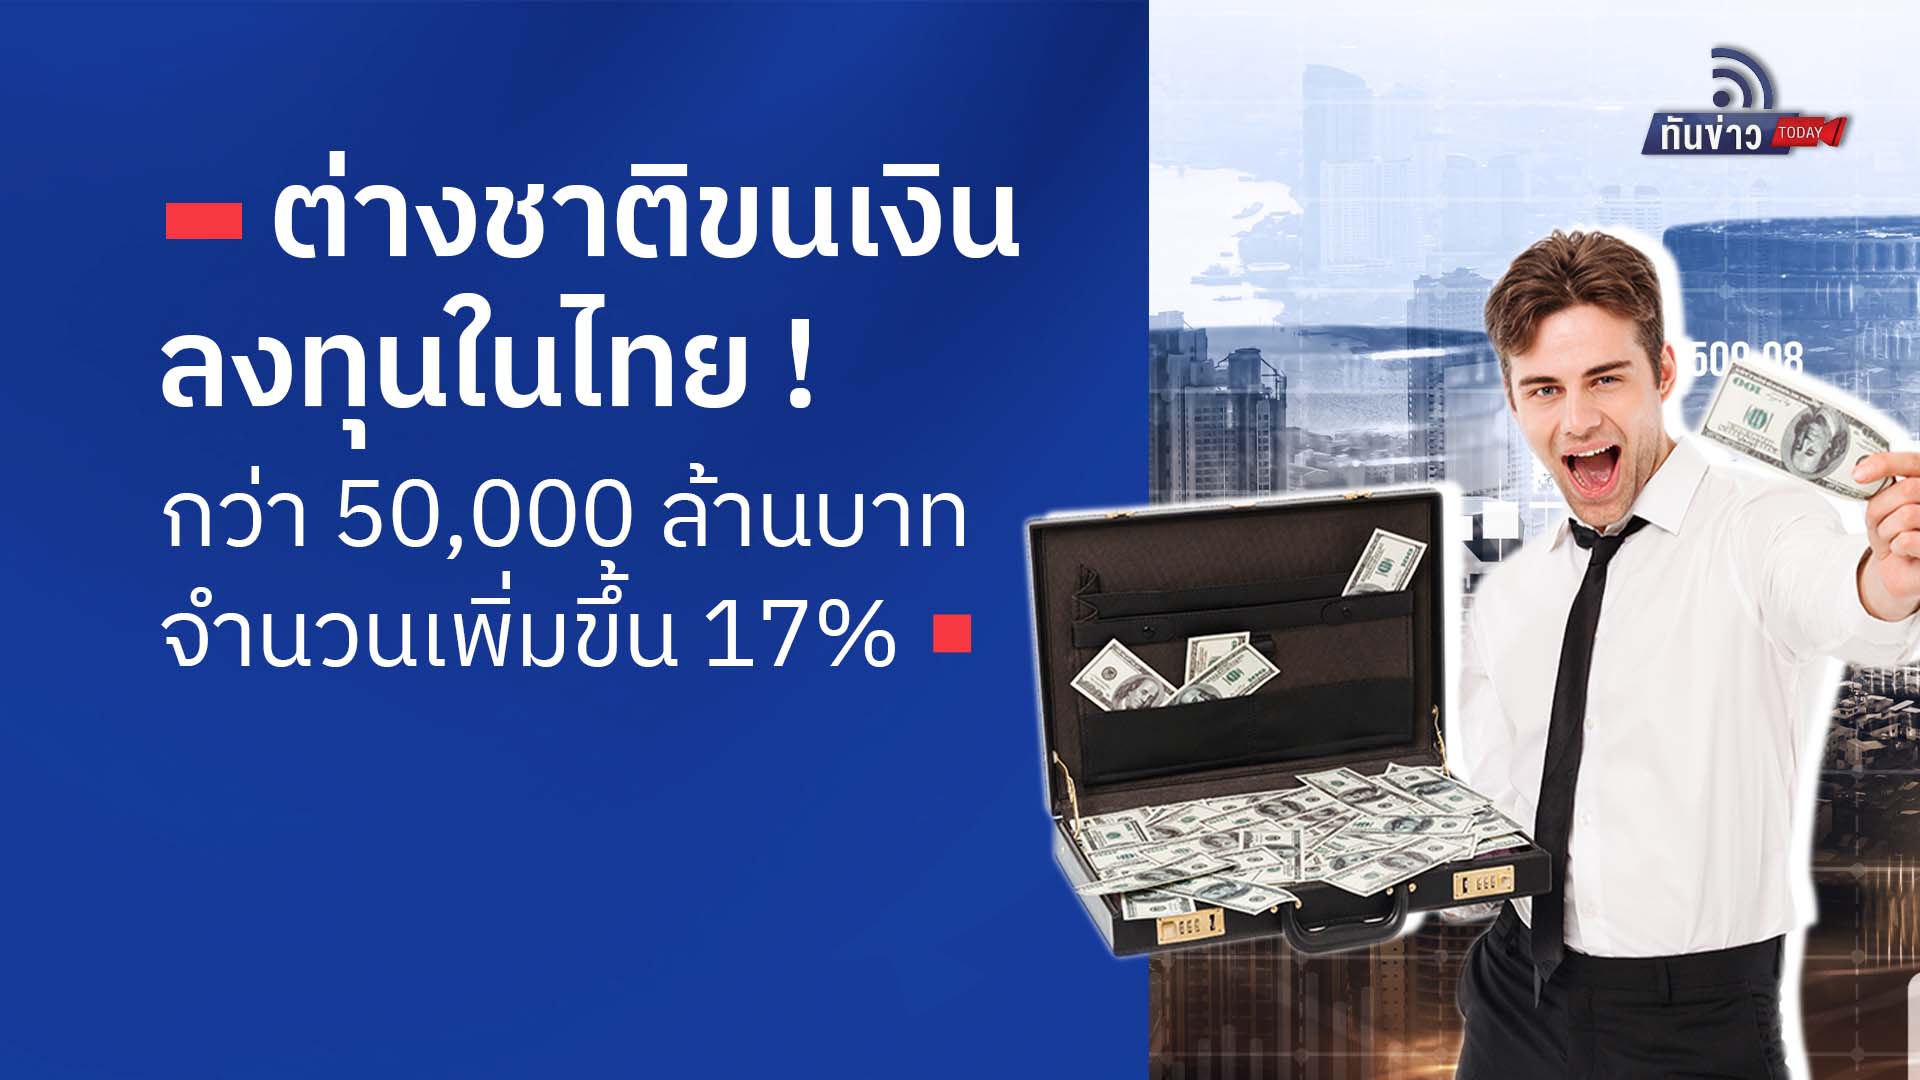 ต่างชาติขนเงินลงทุนในไทยกว่า 50,000 ล้านบาท จำนวนเพิ่มขึ้น 17%